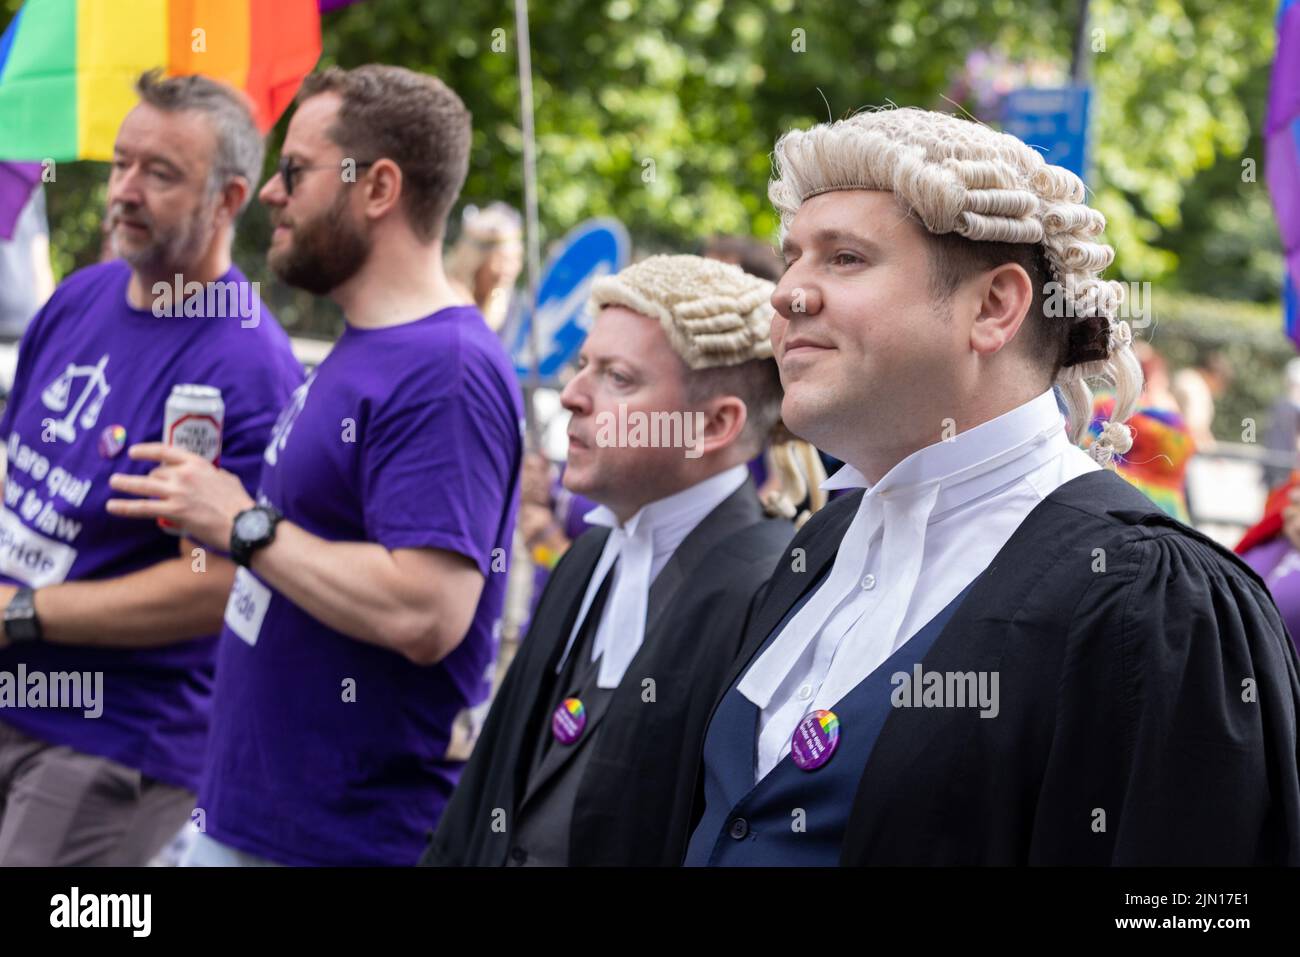 Los abogados marchan como parte del bloque Legal en London Pride 2022, vestidos con trajes y pelucas tradicionales Foto de stock